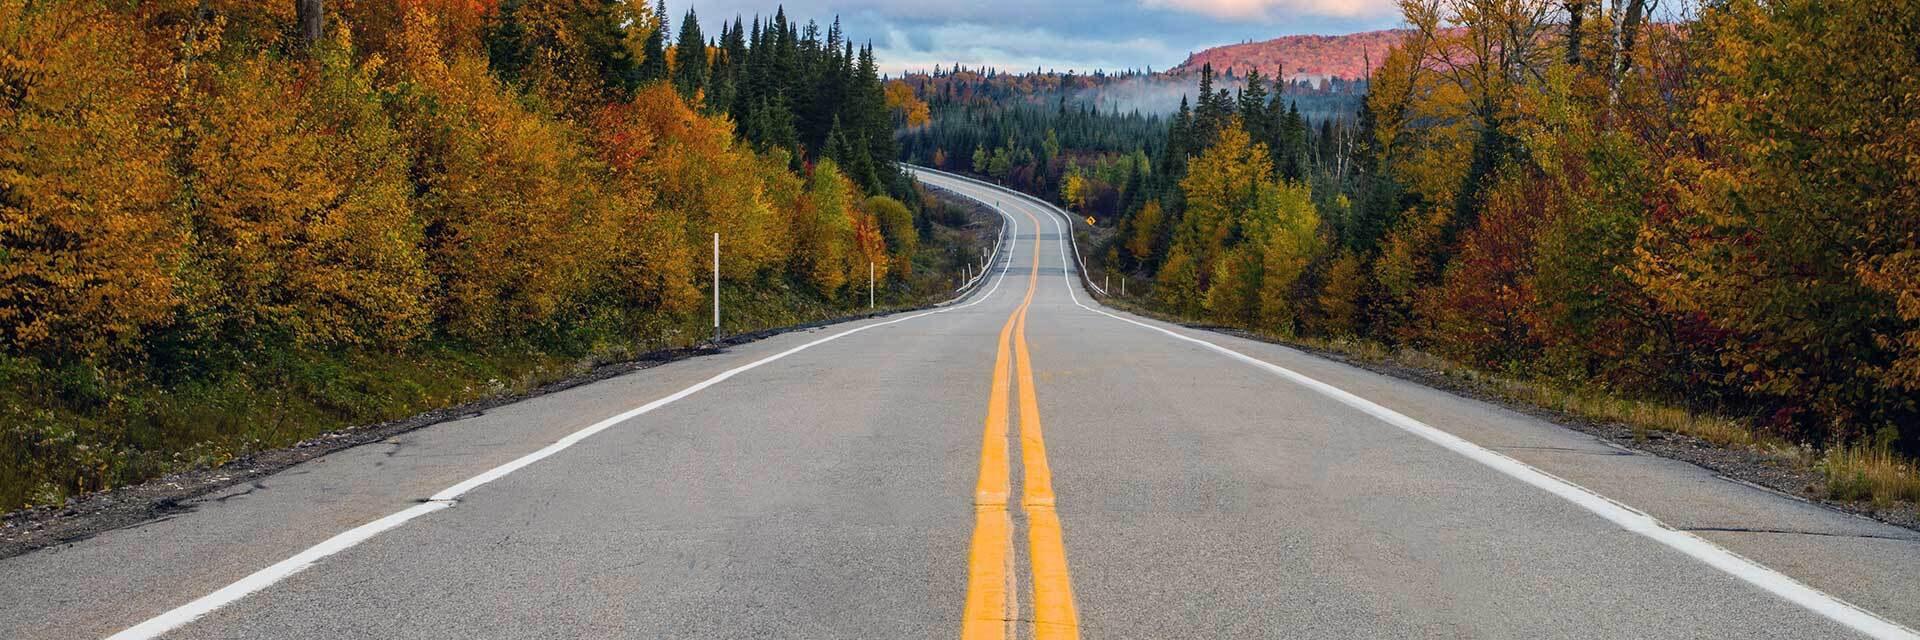 Route tranquille traversant une forêt automnale colorée.